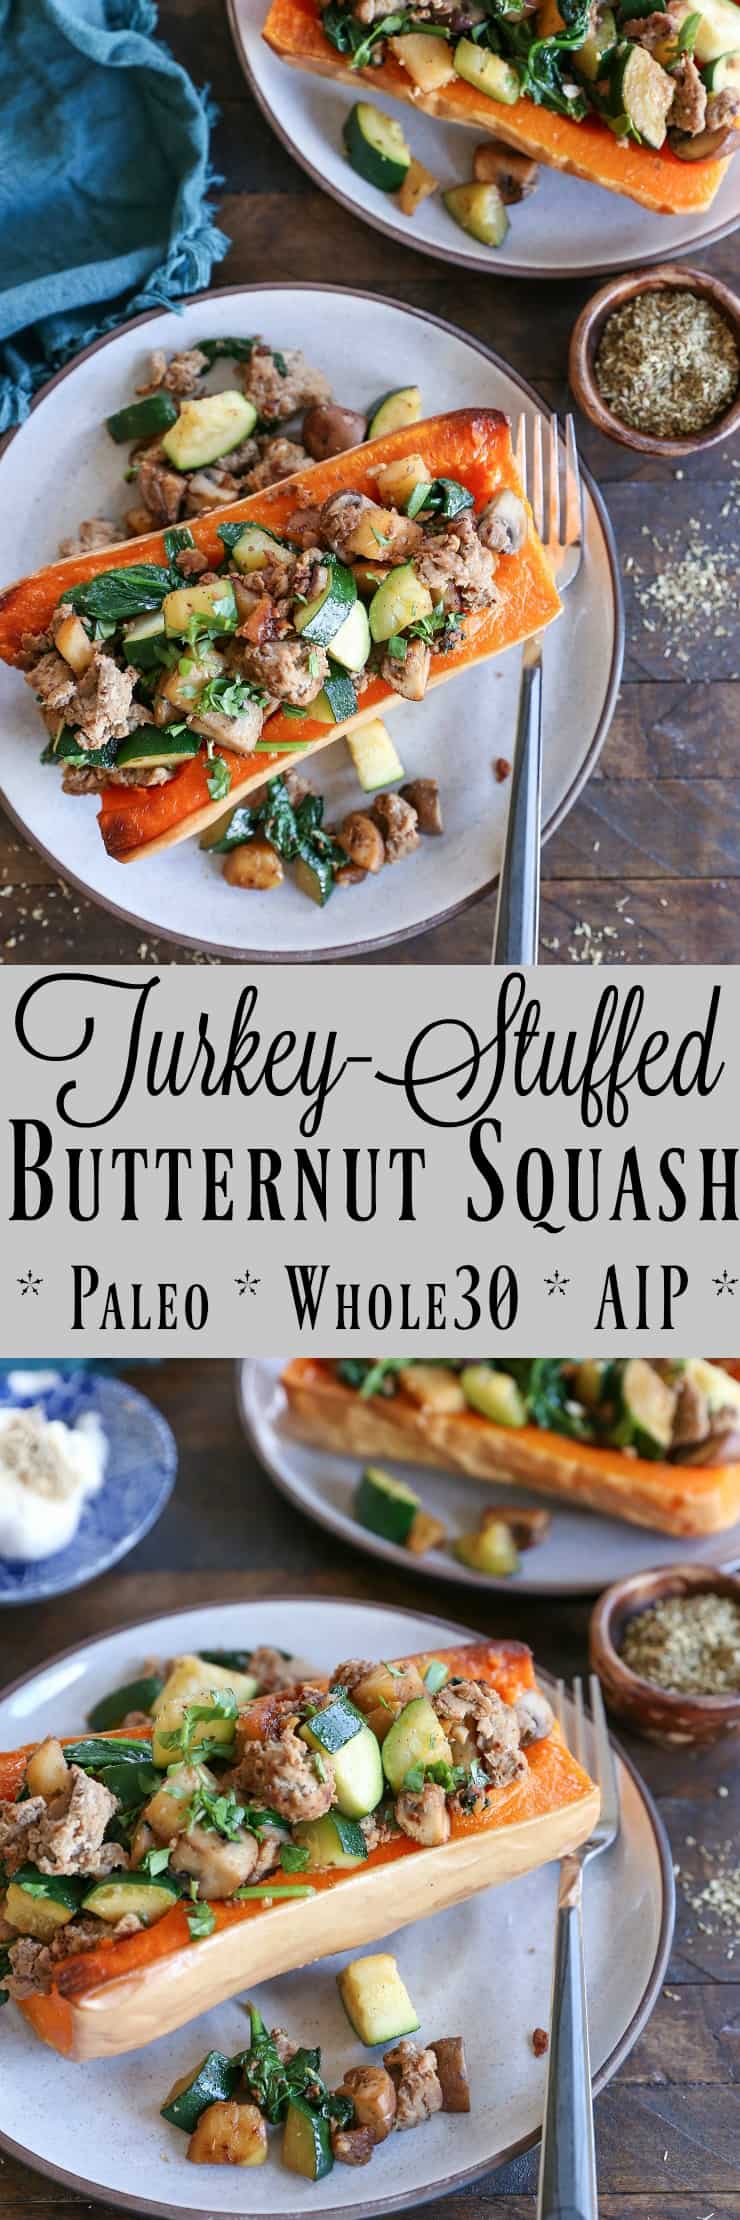 turkey-stuffed butternut squash